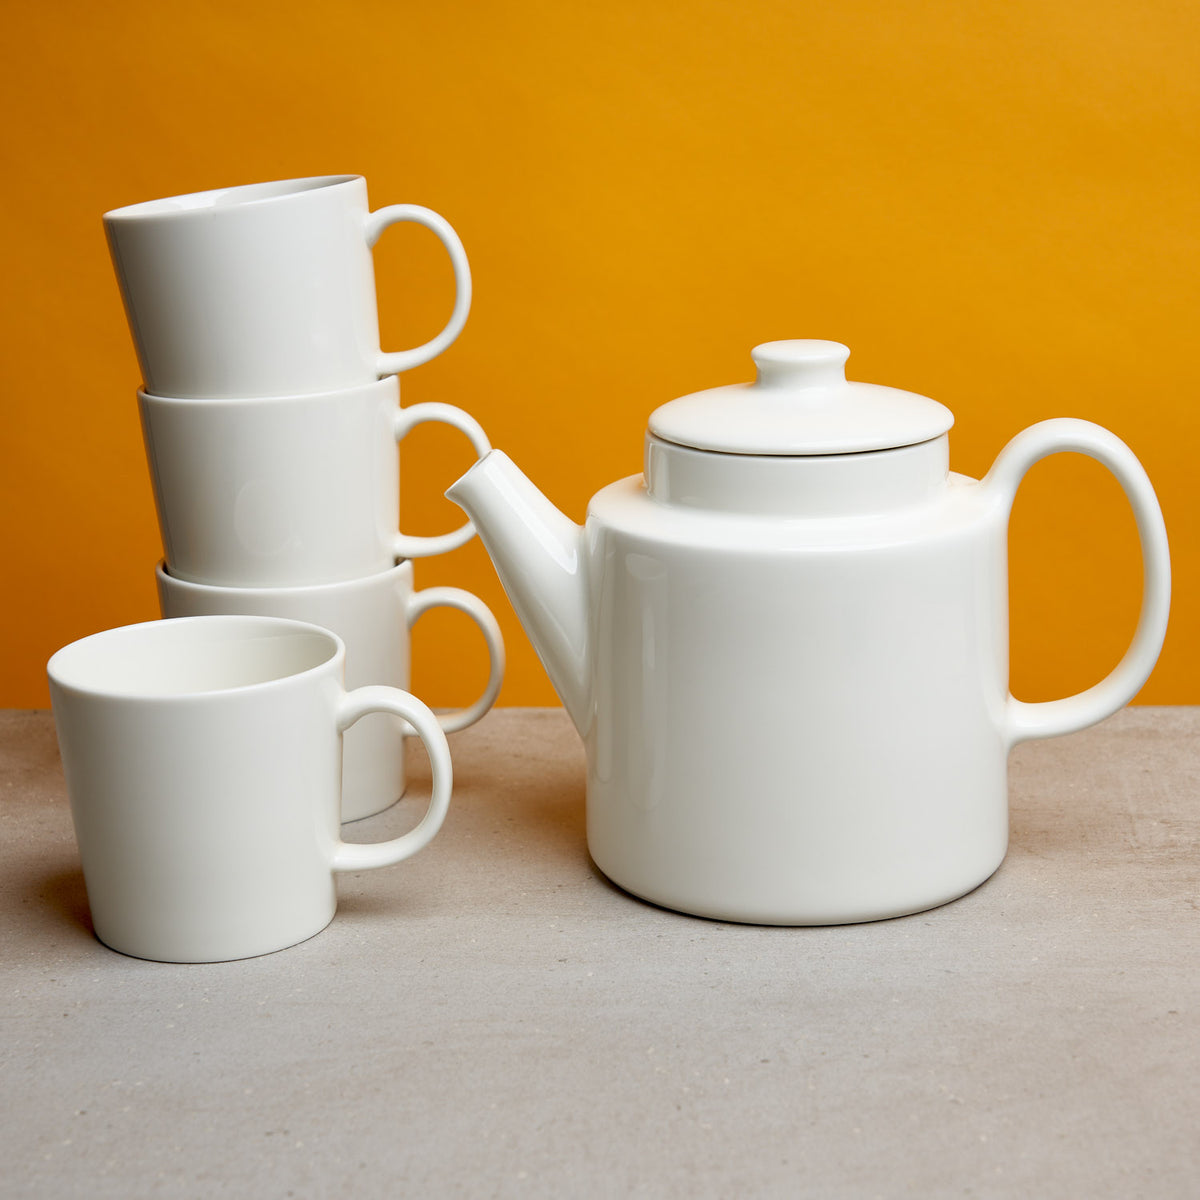 Iittala Teema Teaware Gift Set - August Uncommon Tea